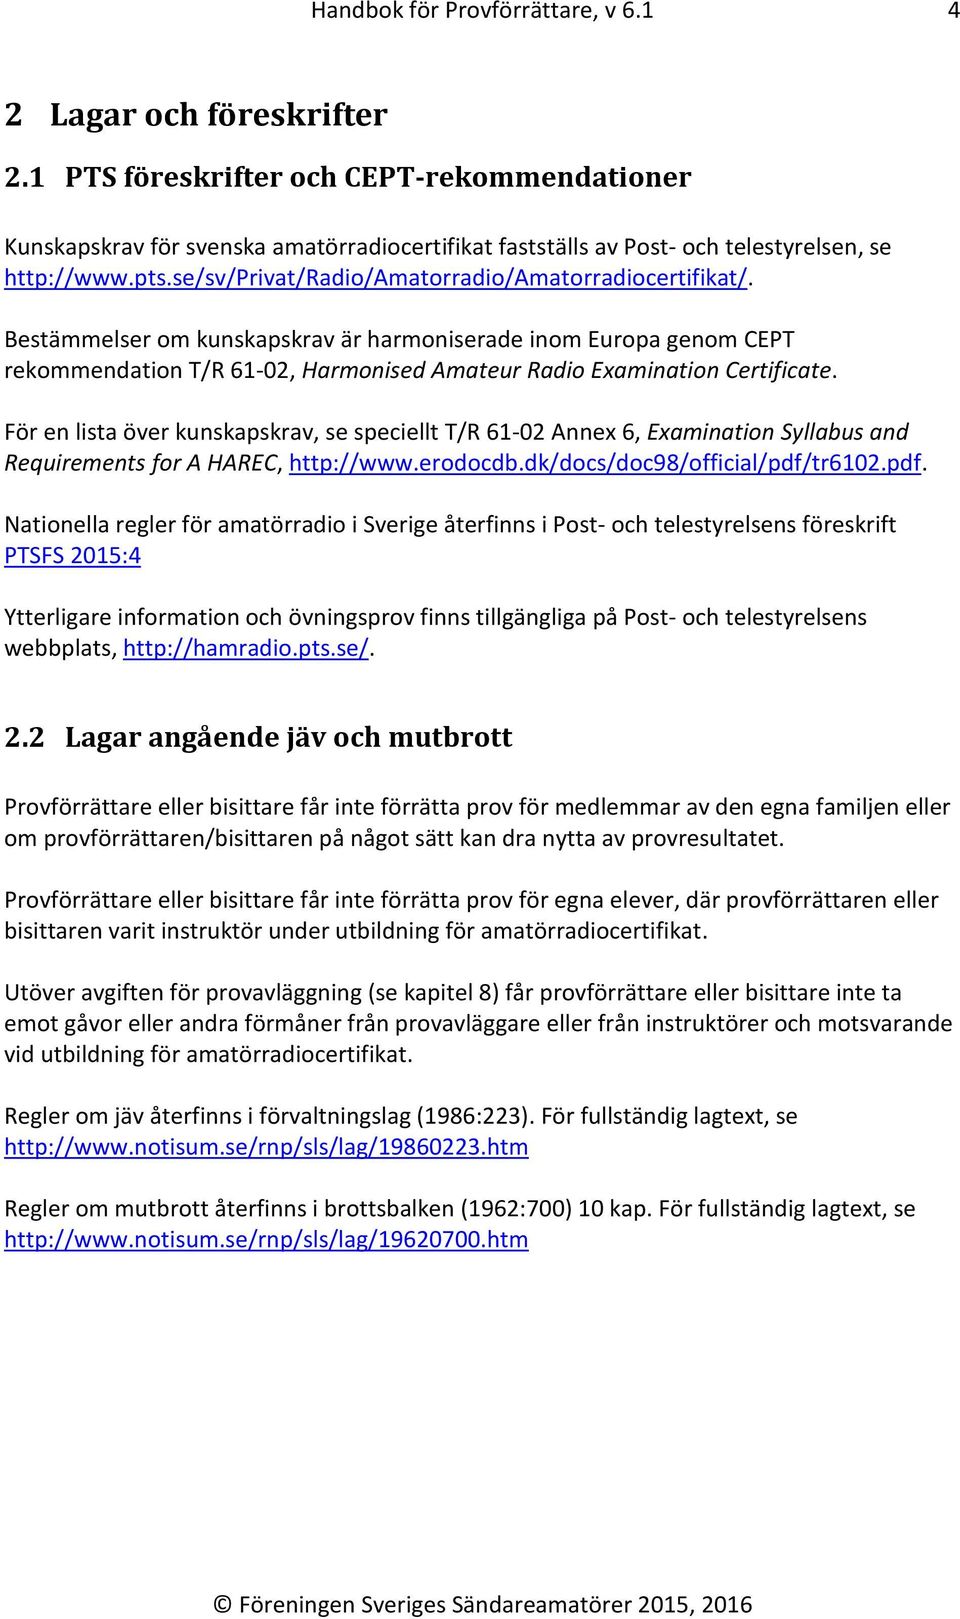 se/sv/privat/radio/amatorradio/amatorradiocertifikat/. Bestämmelser om kunskapskrav är harmoniserade inom Europa genom CEPT rekommendation T/R 61-02, Harmonised Amateur Radio Examination Certificate.